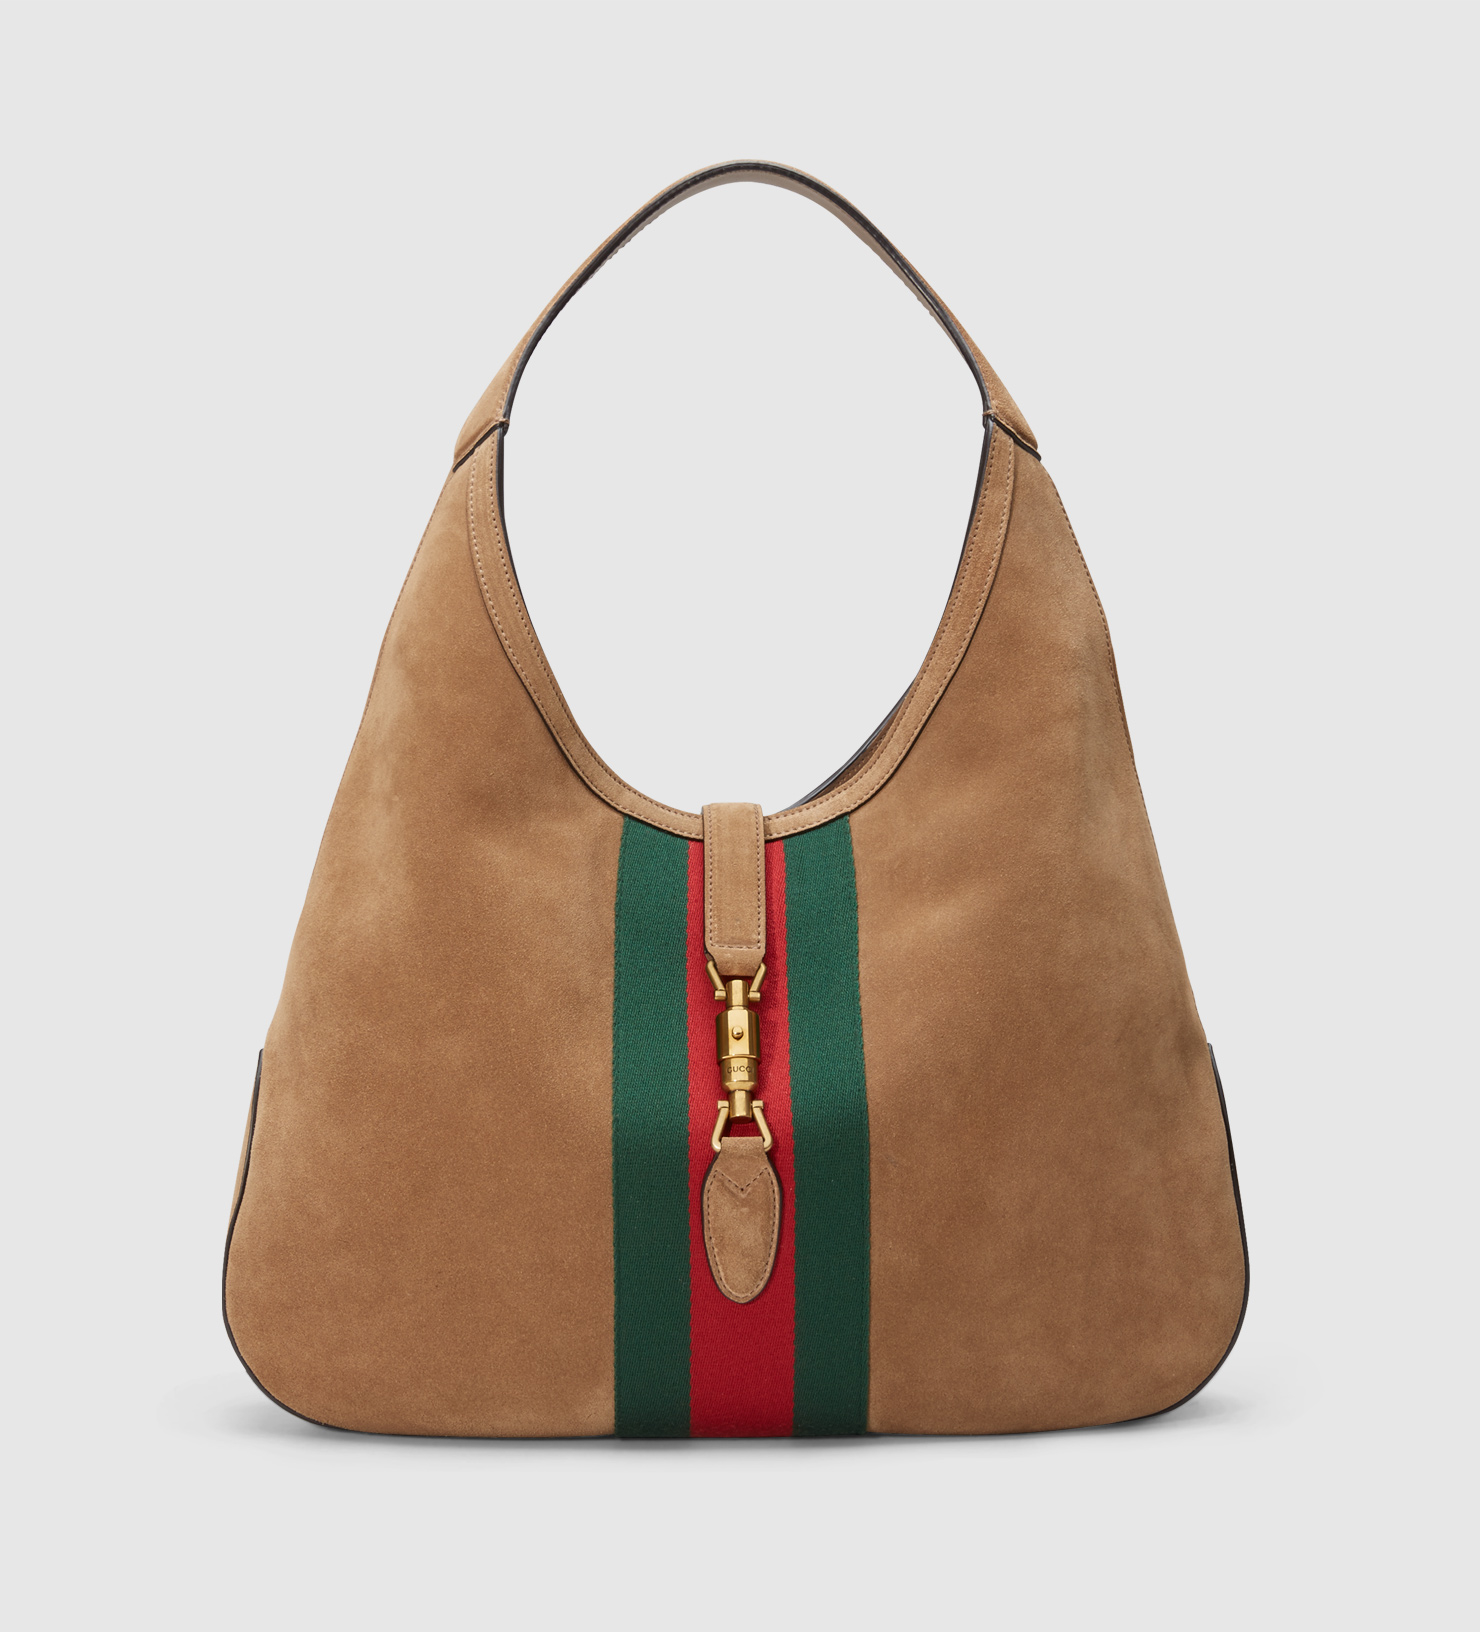 Gucci Jackie Hobo Bag | SEMA Data Co-op